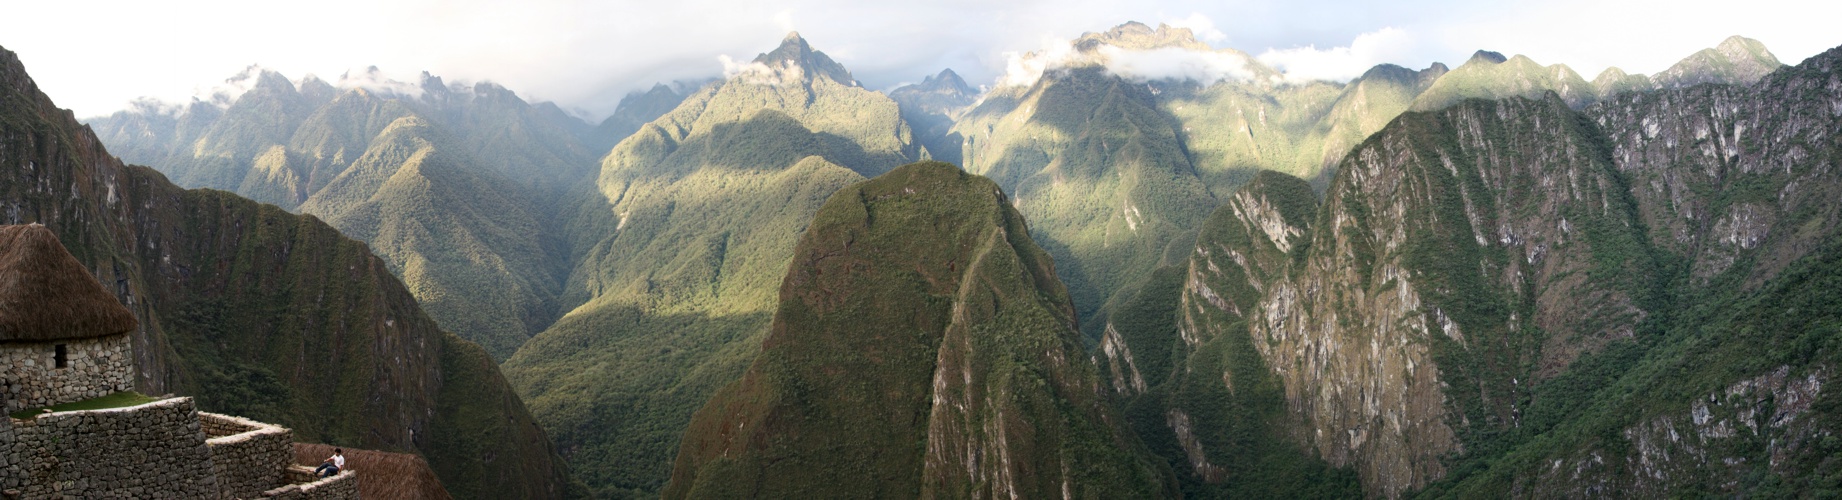 Machu Picchu - versunkene Stadt der Wolkenmenschen